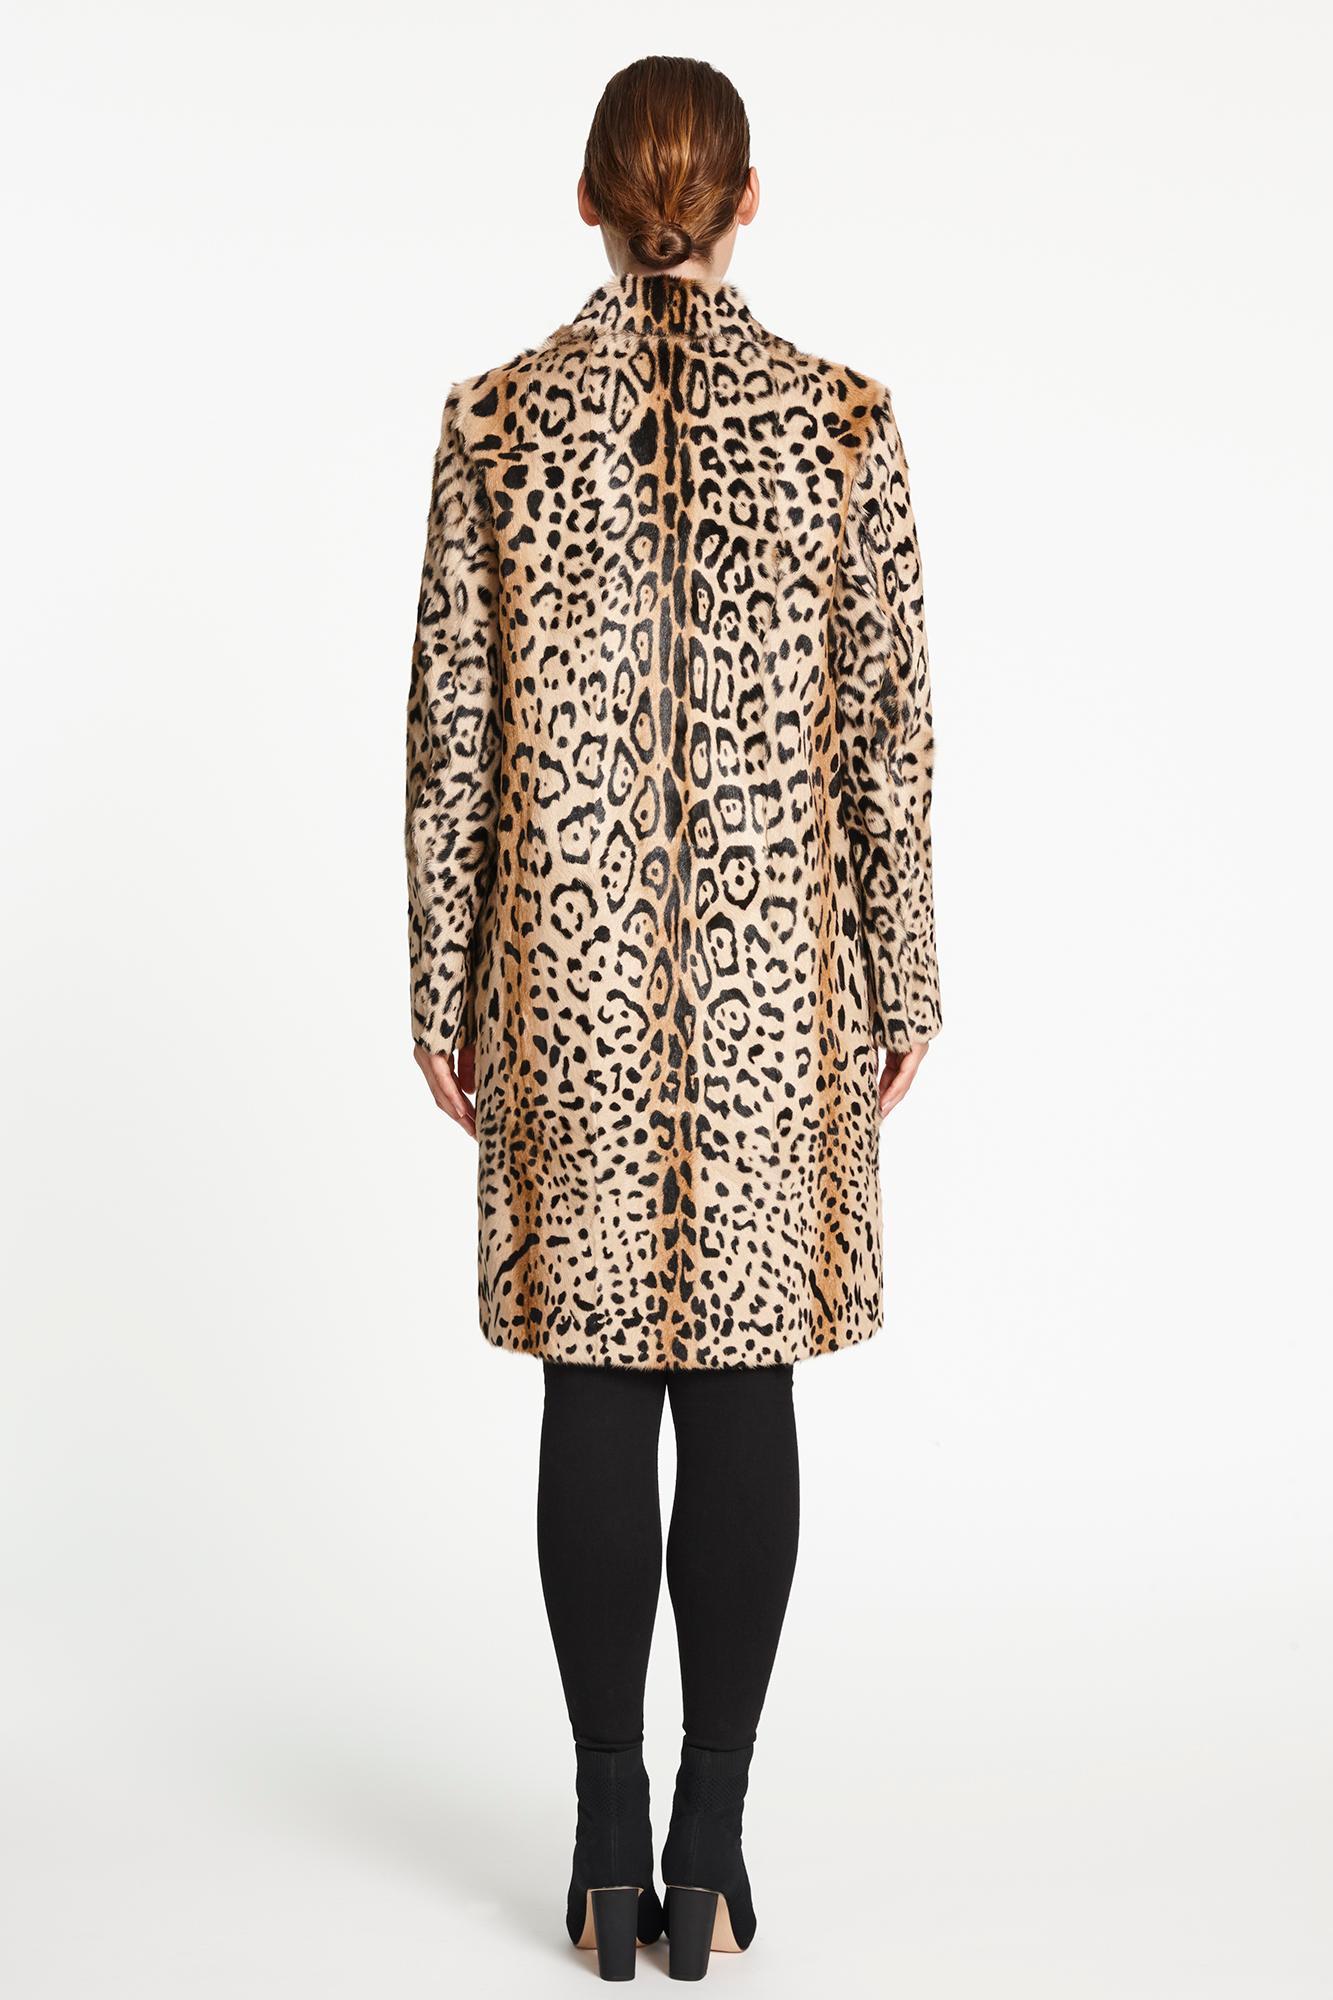 Verheyen London Leopard Print Coat in Natural Goat Hair Fur UK 12 - Brand New 3